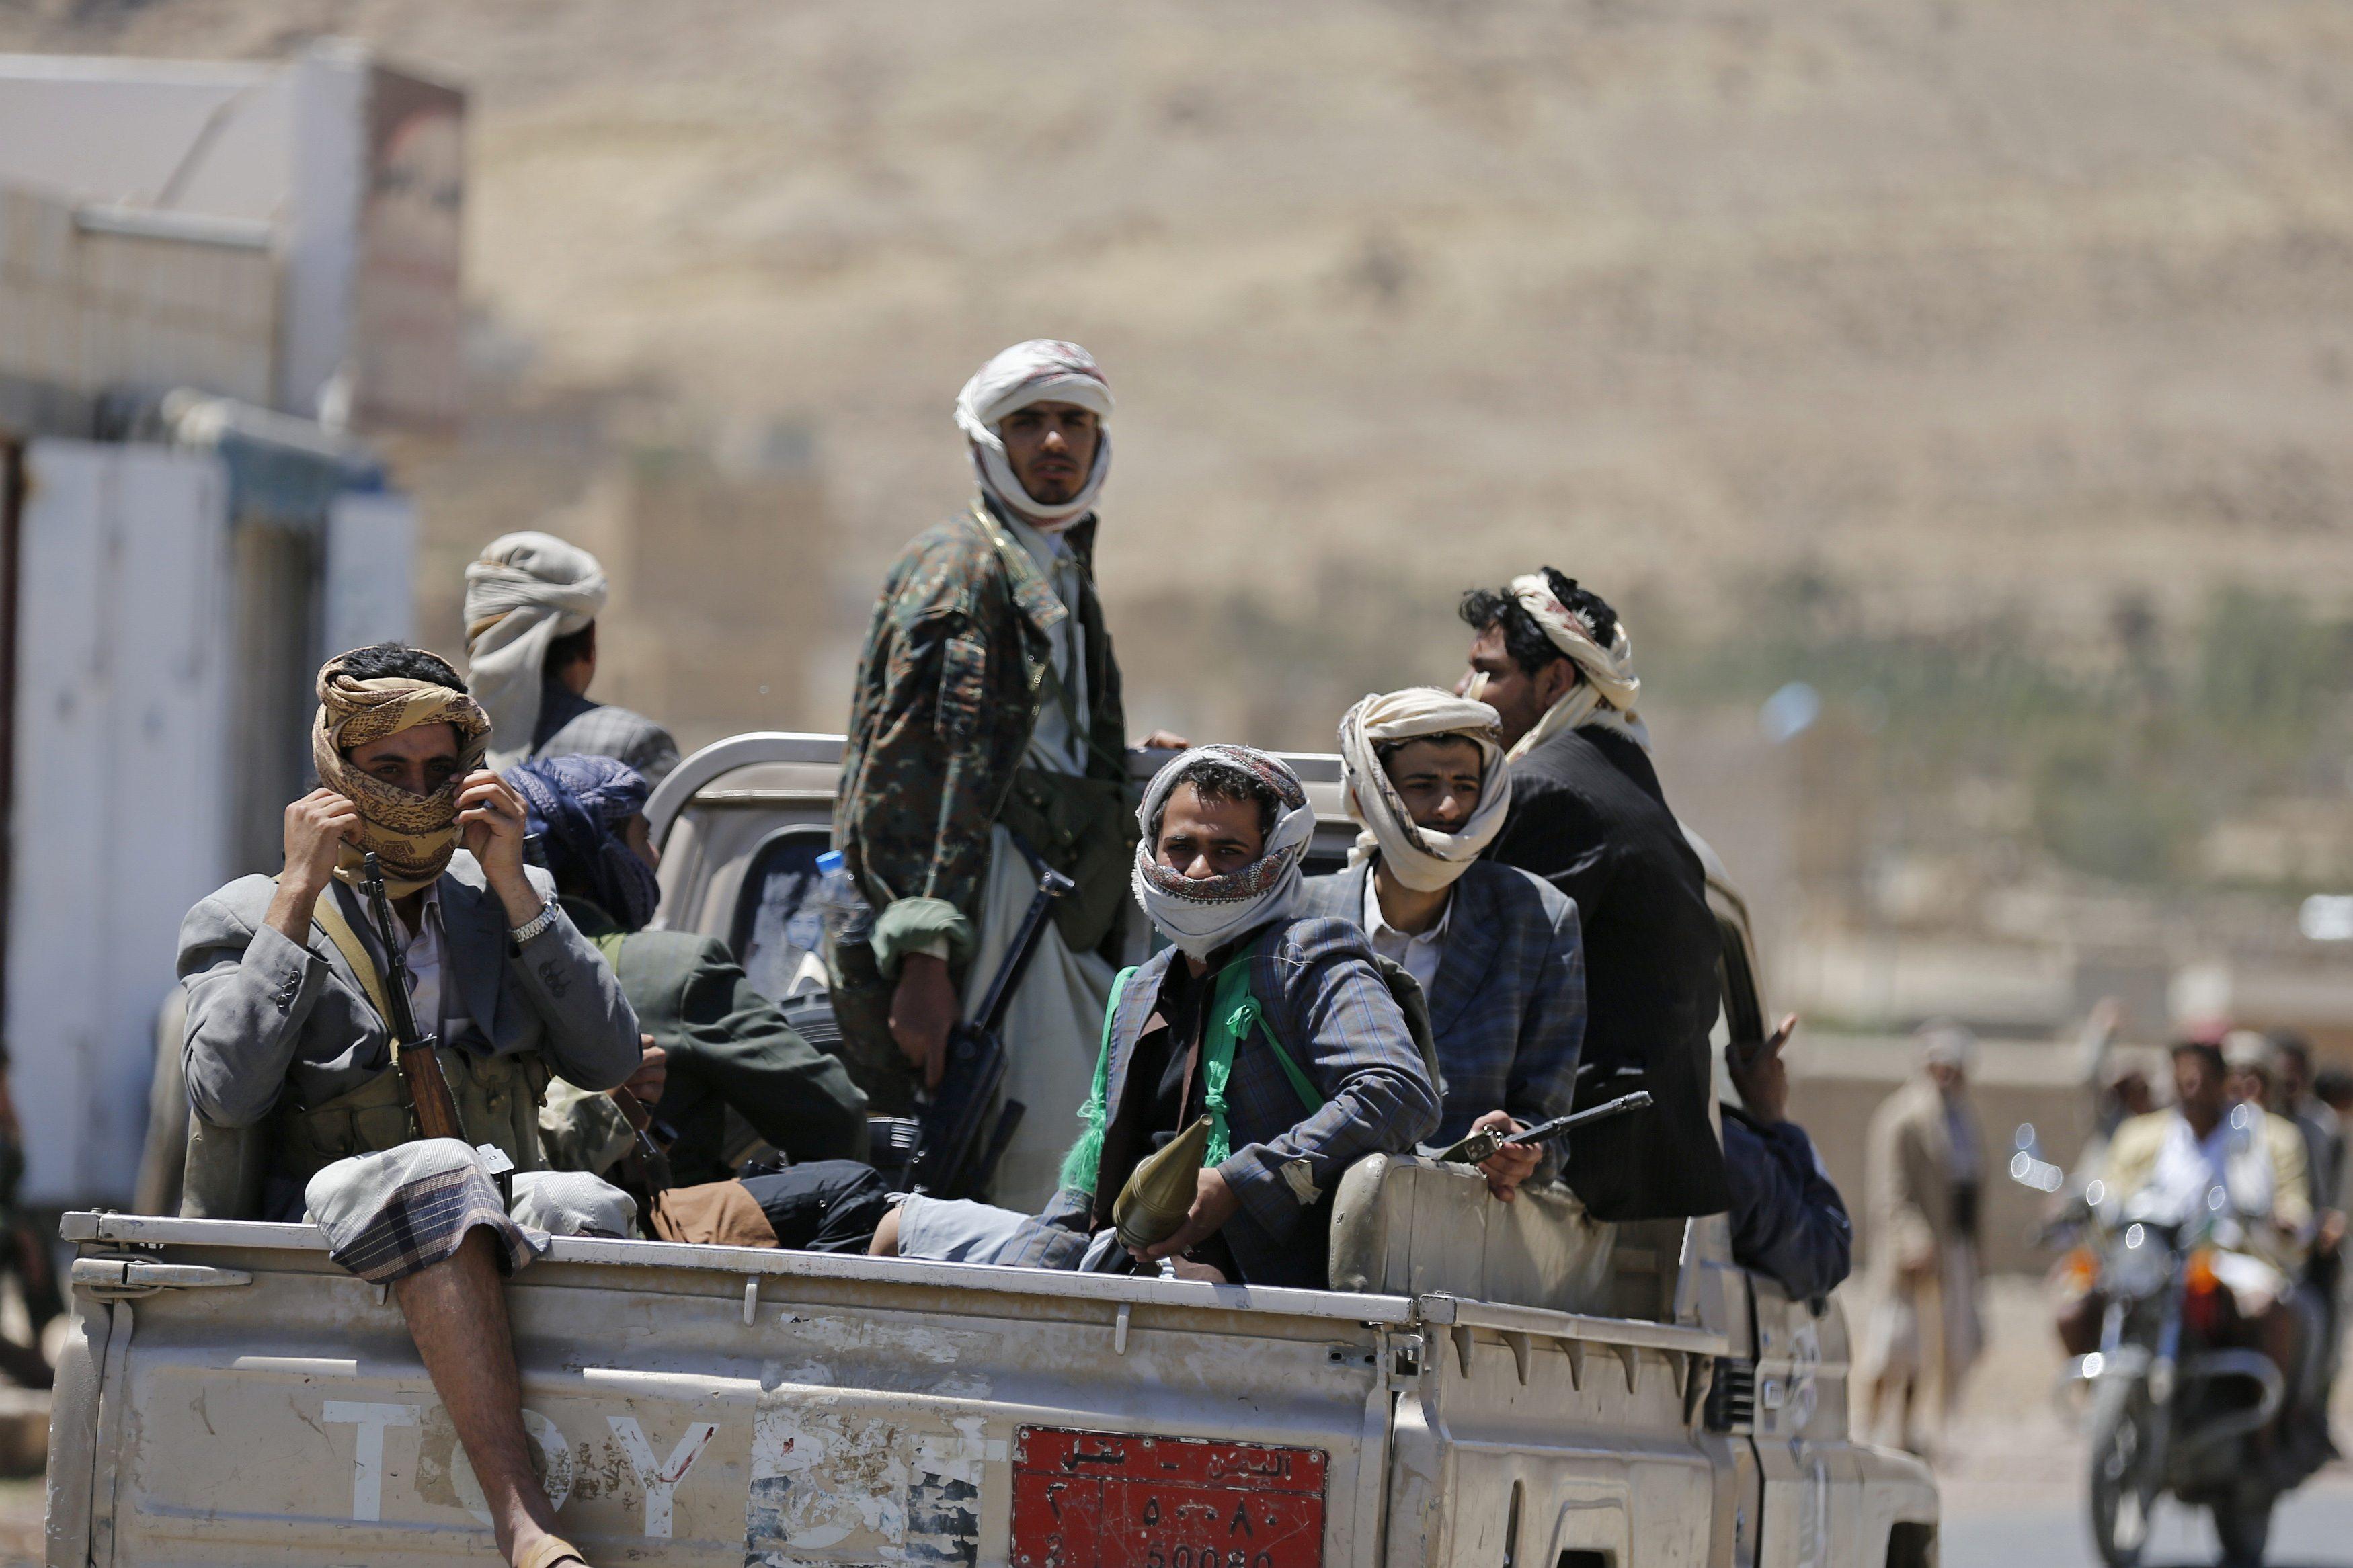 مليشيا الحوثي تختطف أكثر من 20 شخصا بينهم شيخ قبلي بعد مداهمة جنازة في قرية بالبيضاء